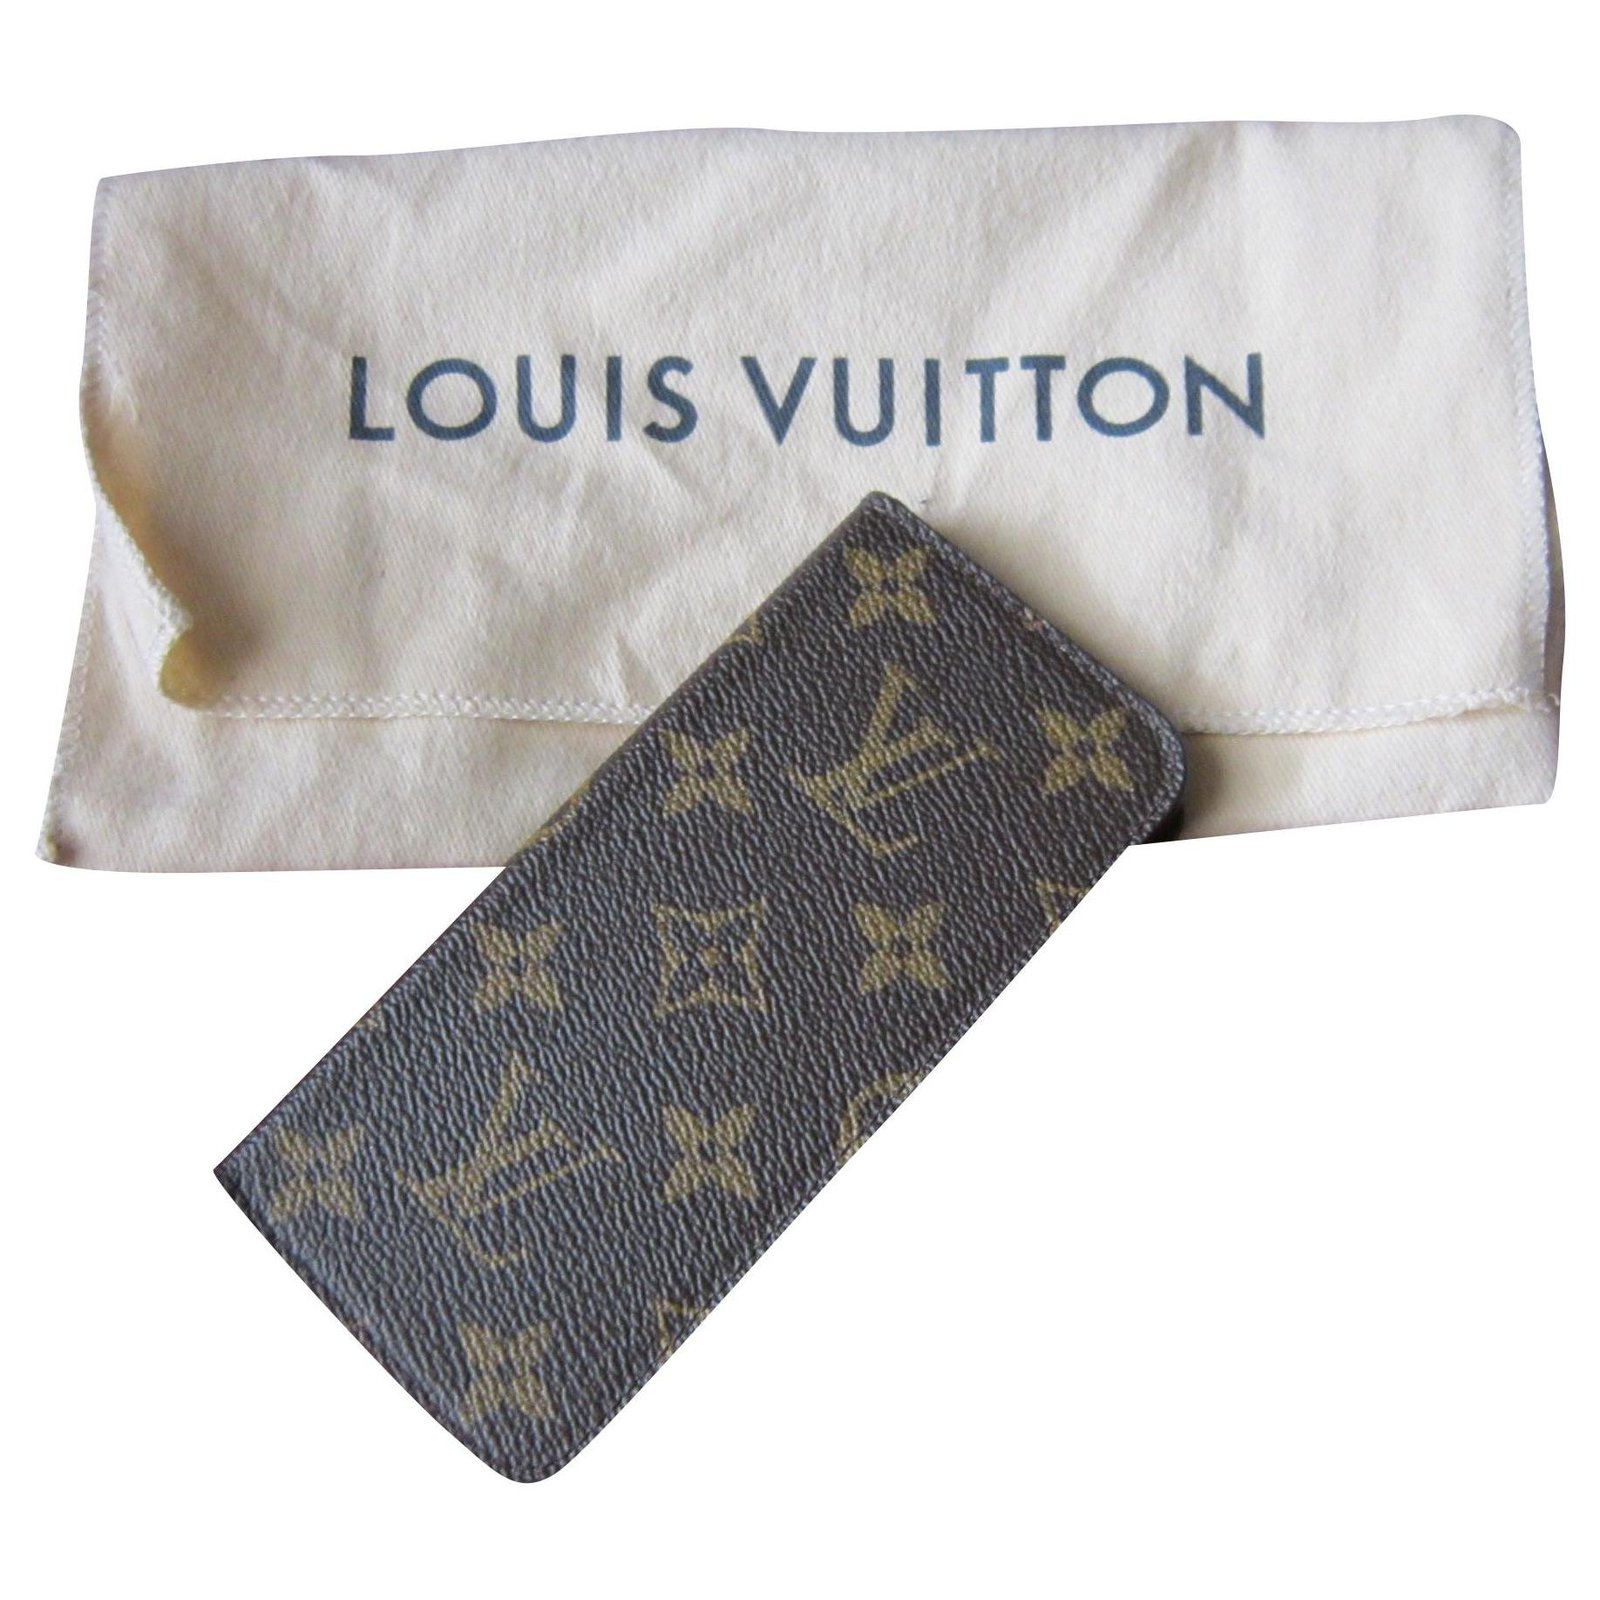 Louis Vuitton iPhone 6 Case 